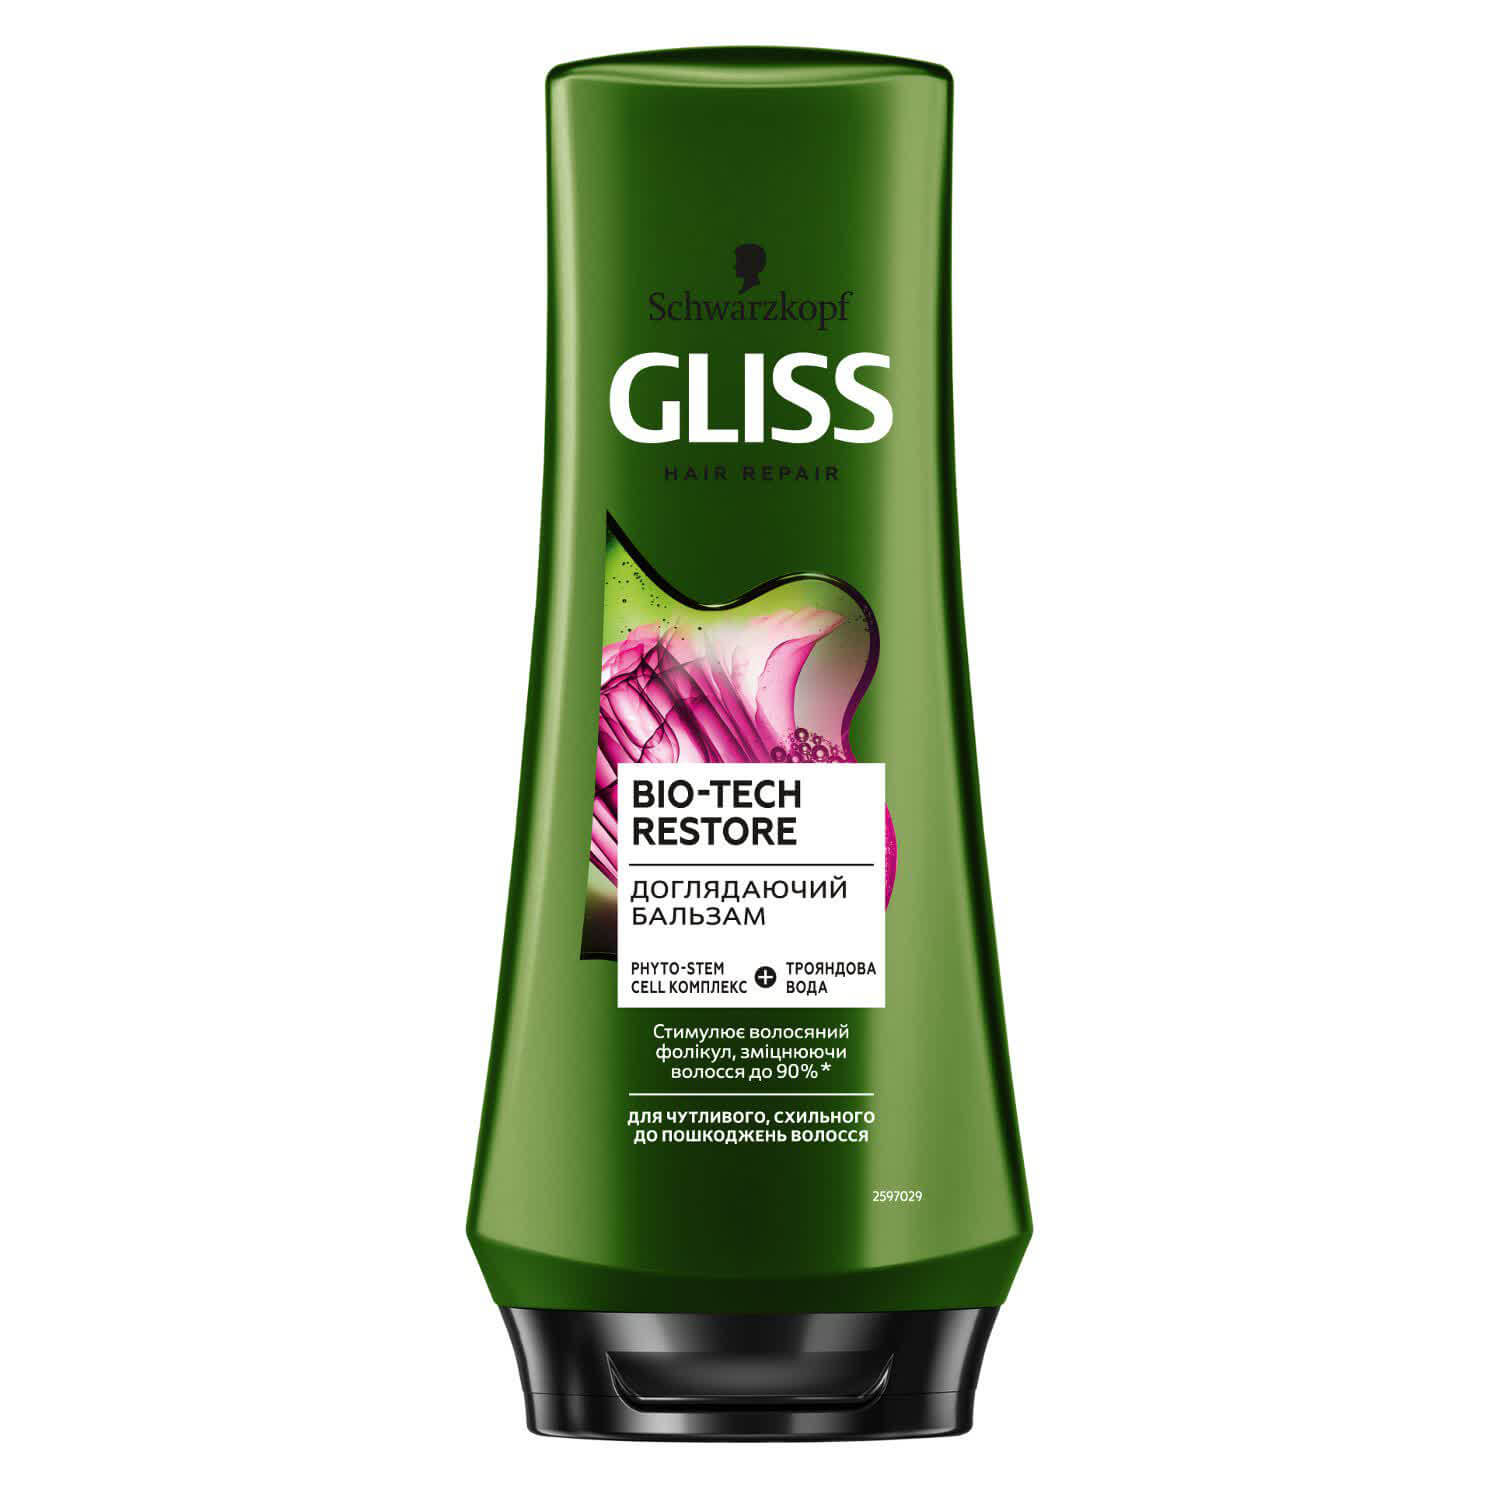 Ухаживающий бальзам GLISS Bio-Tech для чувствительных, склонных к повреждениям волос, 200 мл, 200мл (Артикул: 795620)